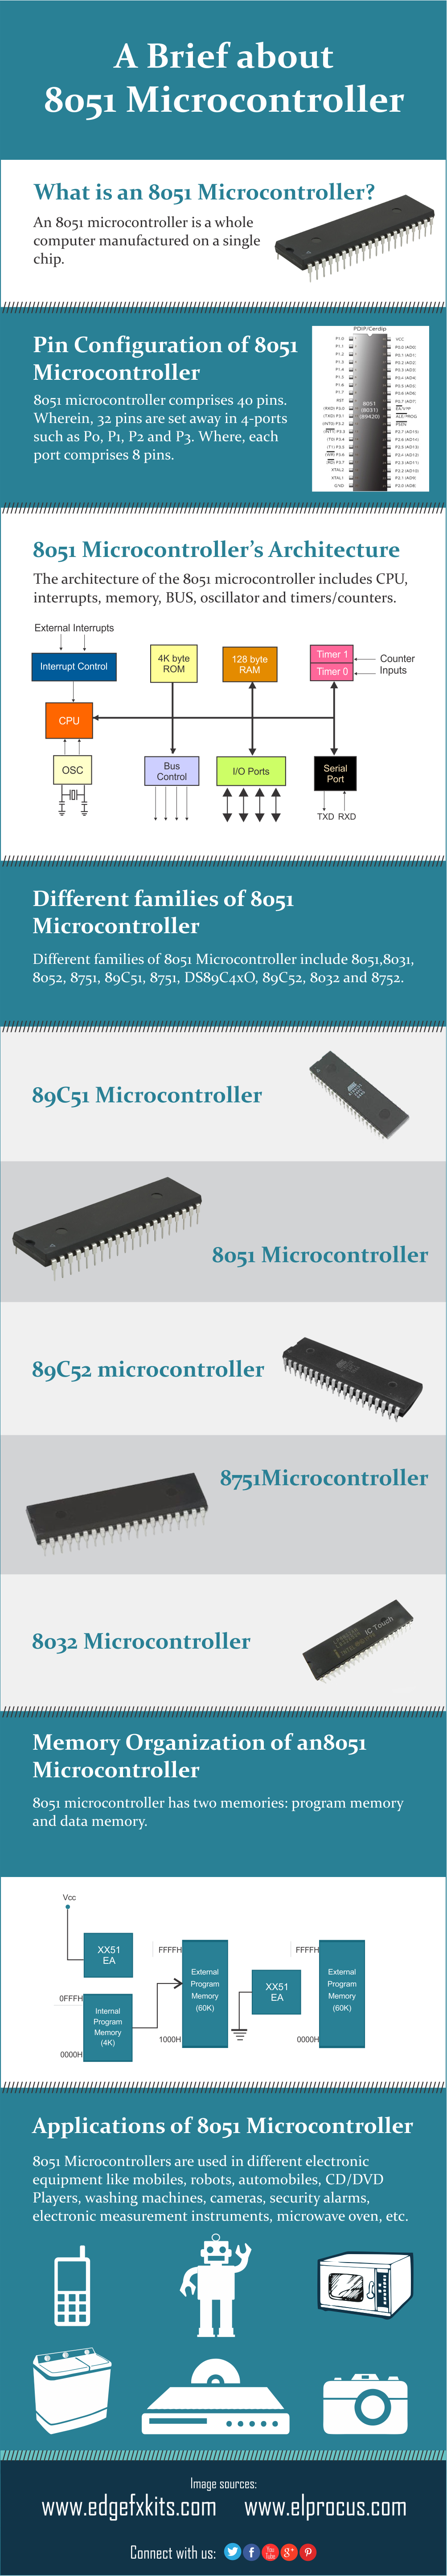 इन्फोग्राफिक्स: 8051 माइक्रोकंट्रोलर के बारे में एक संक्षिप्त